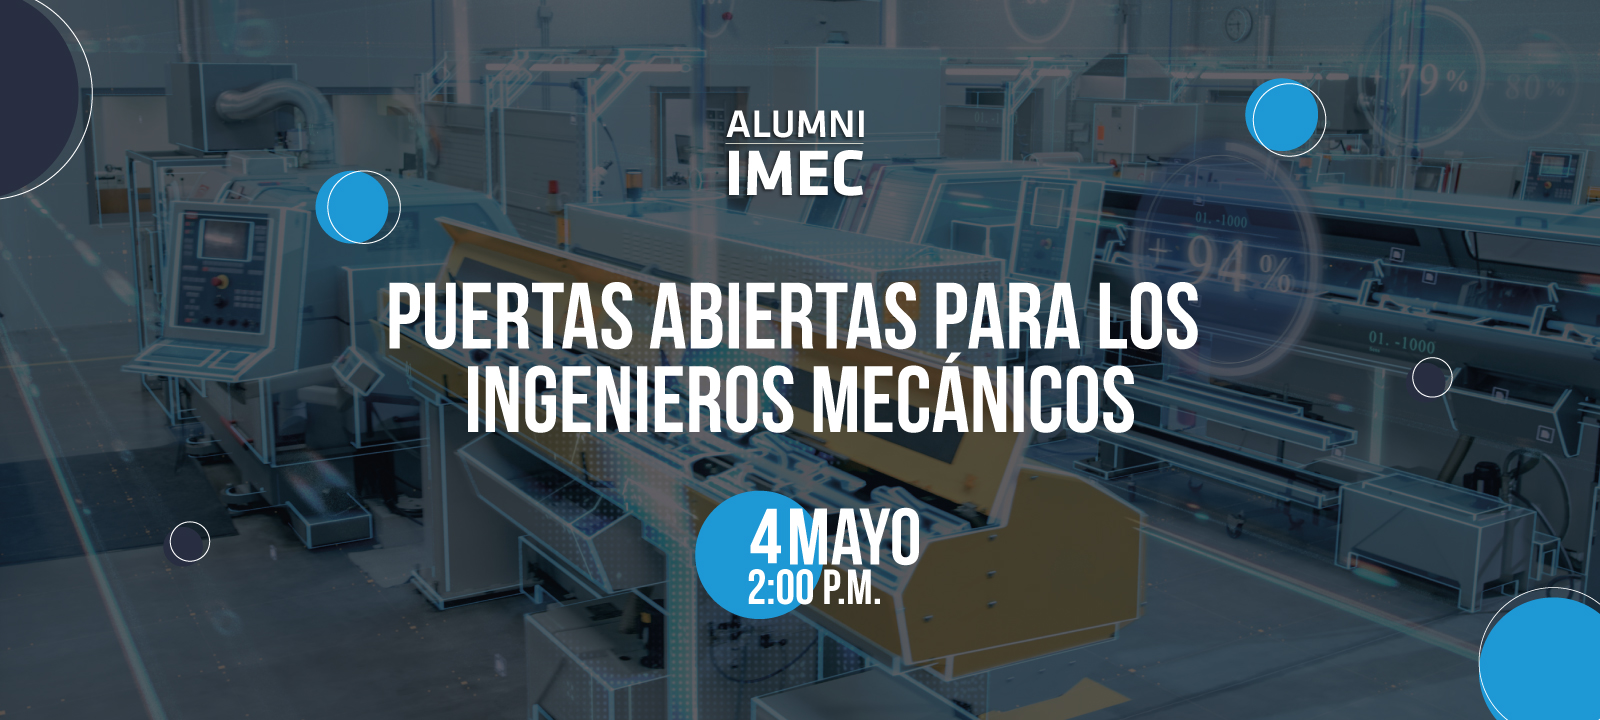 Charla Alumni IMEC por Lina Huertas Microsoft UK estrategias de digitalización para acelerar la transformación de la industria, oportunidades de la Ingenieria Mecanica